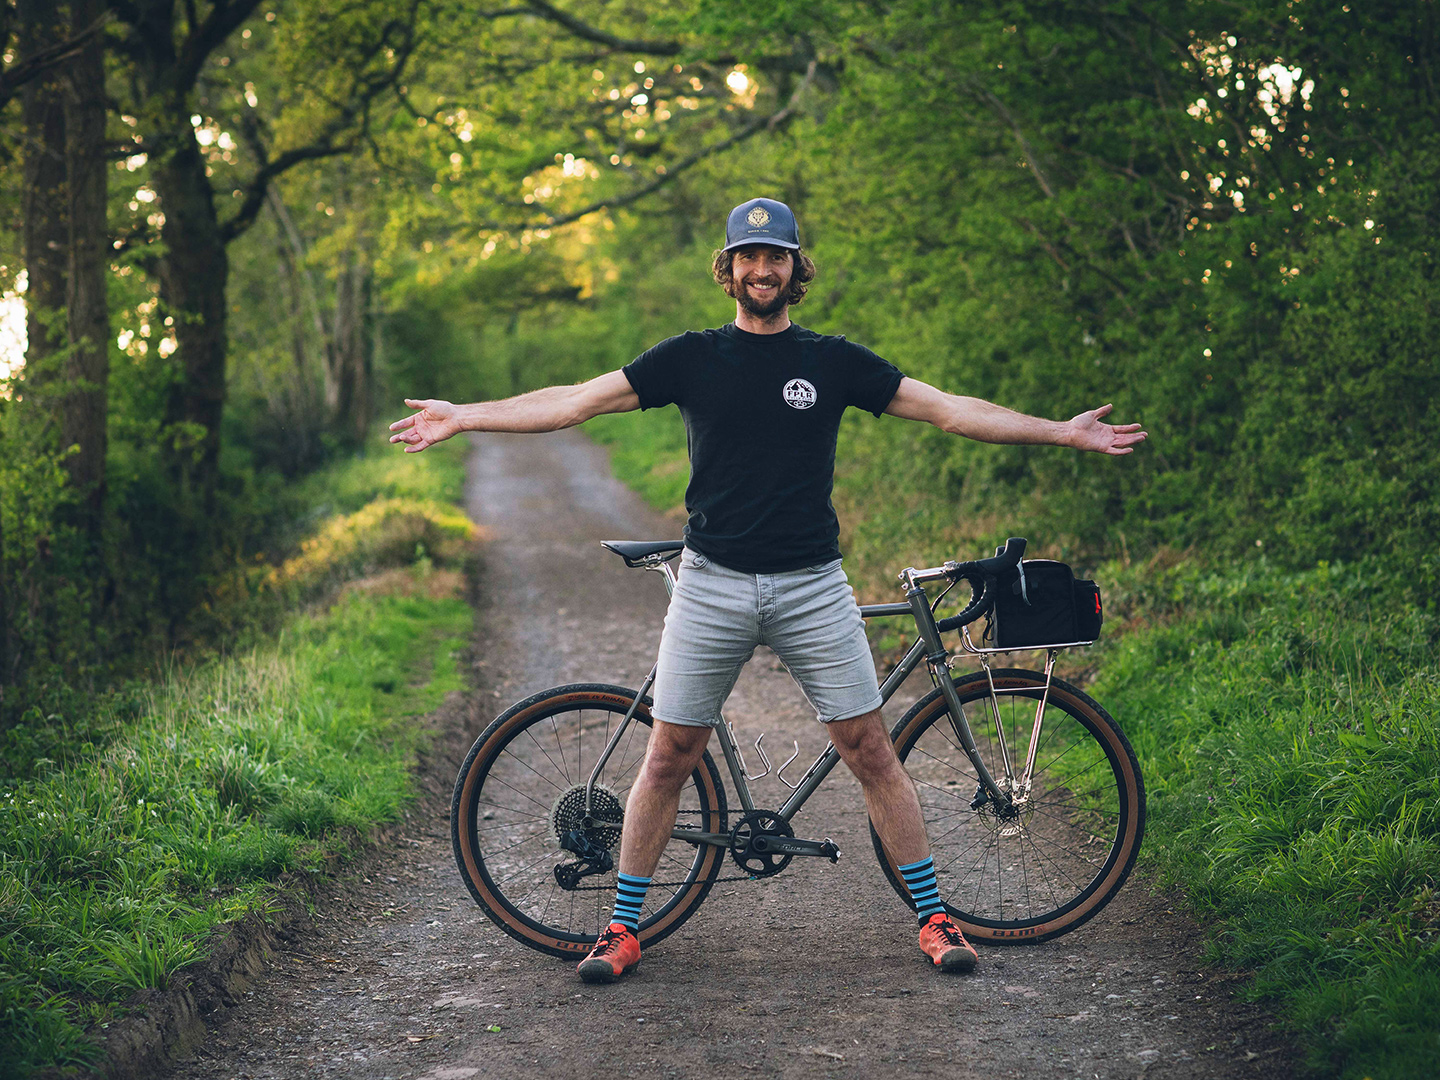 Wayne Reid stoi przed swoim rowerem na leśnym szlaku